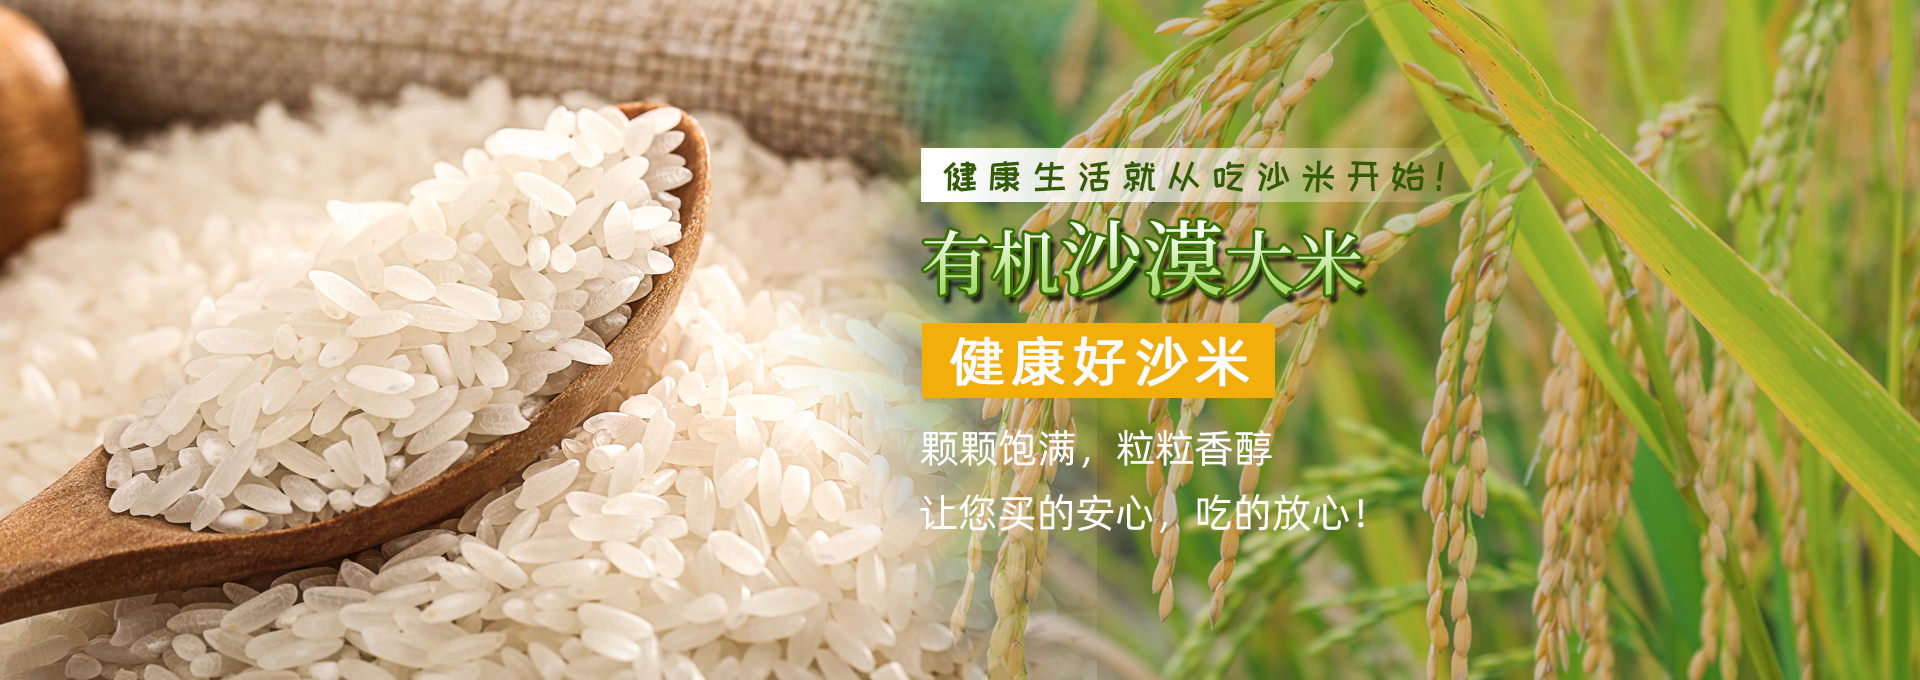 绿色有机_纯天然食品饮料项目合作蔬菜-北京晶源商贸有限责任公司